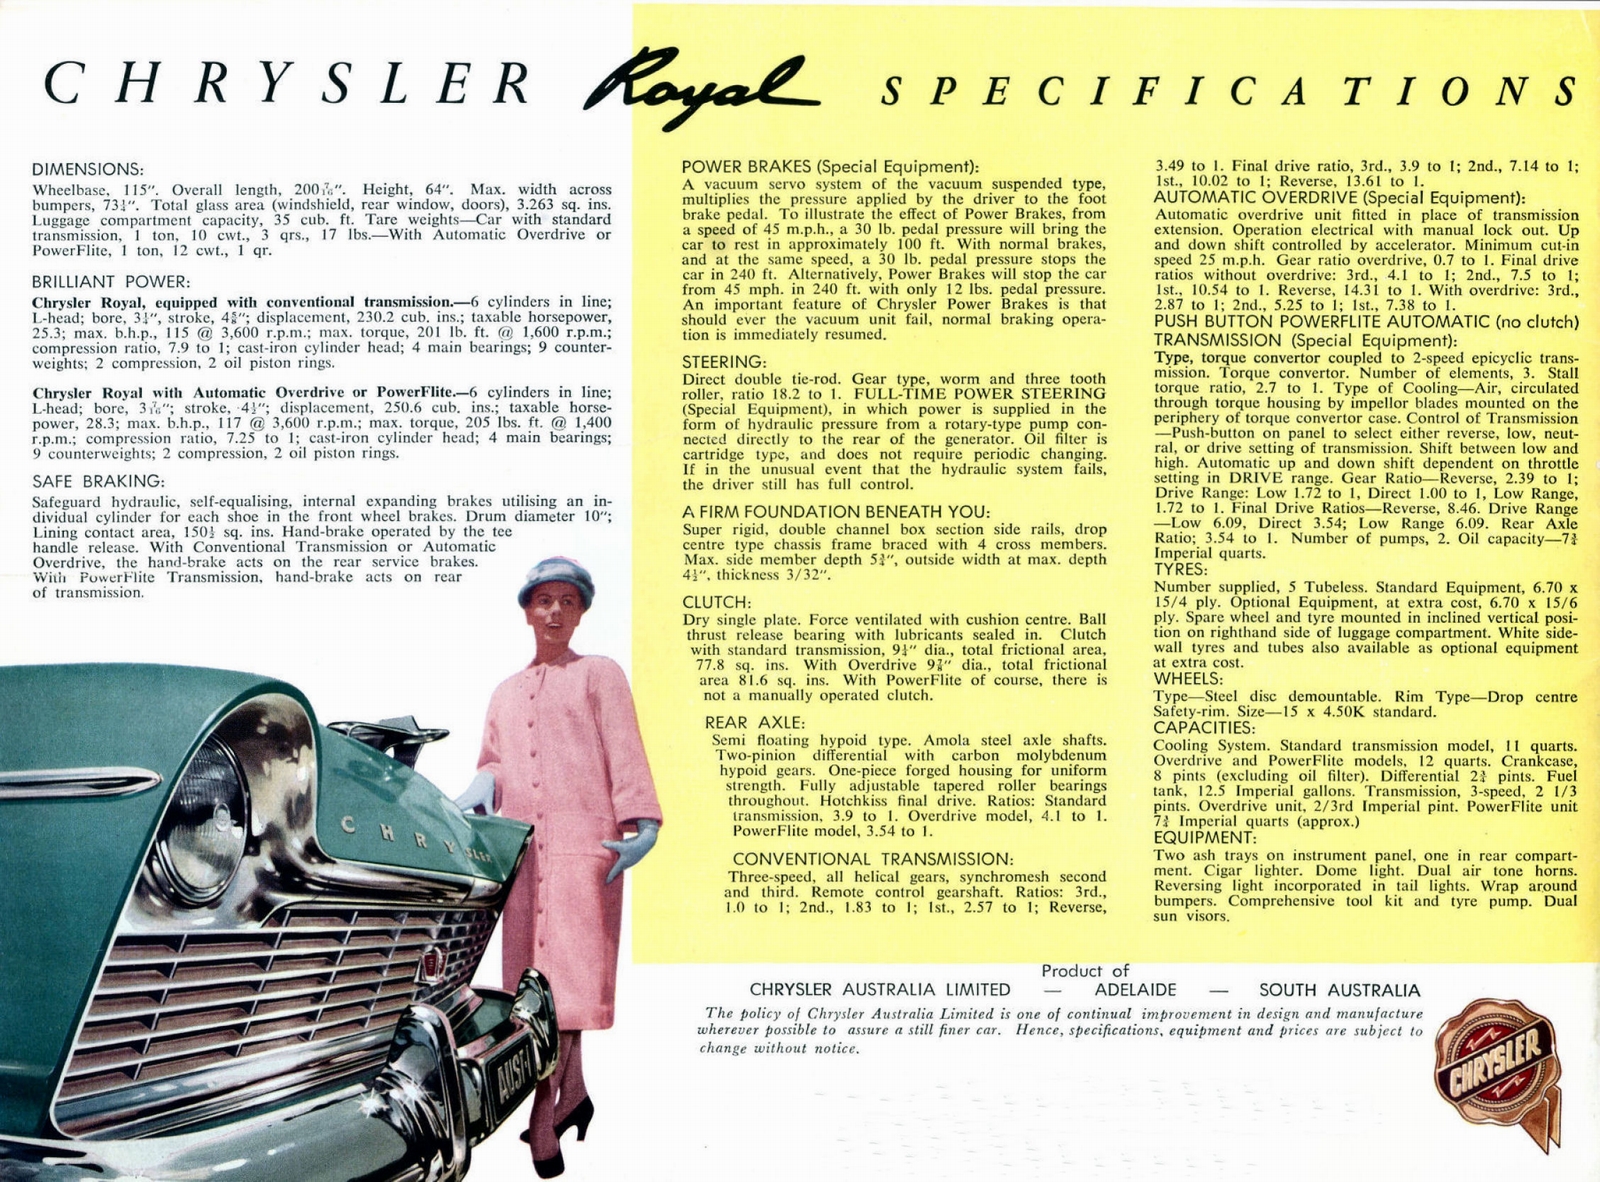 n_1957 Chrysler Royal-12.jpg